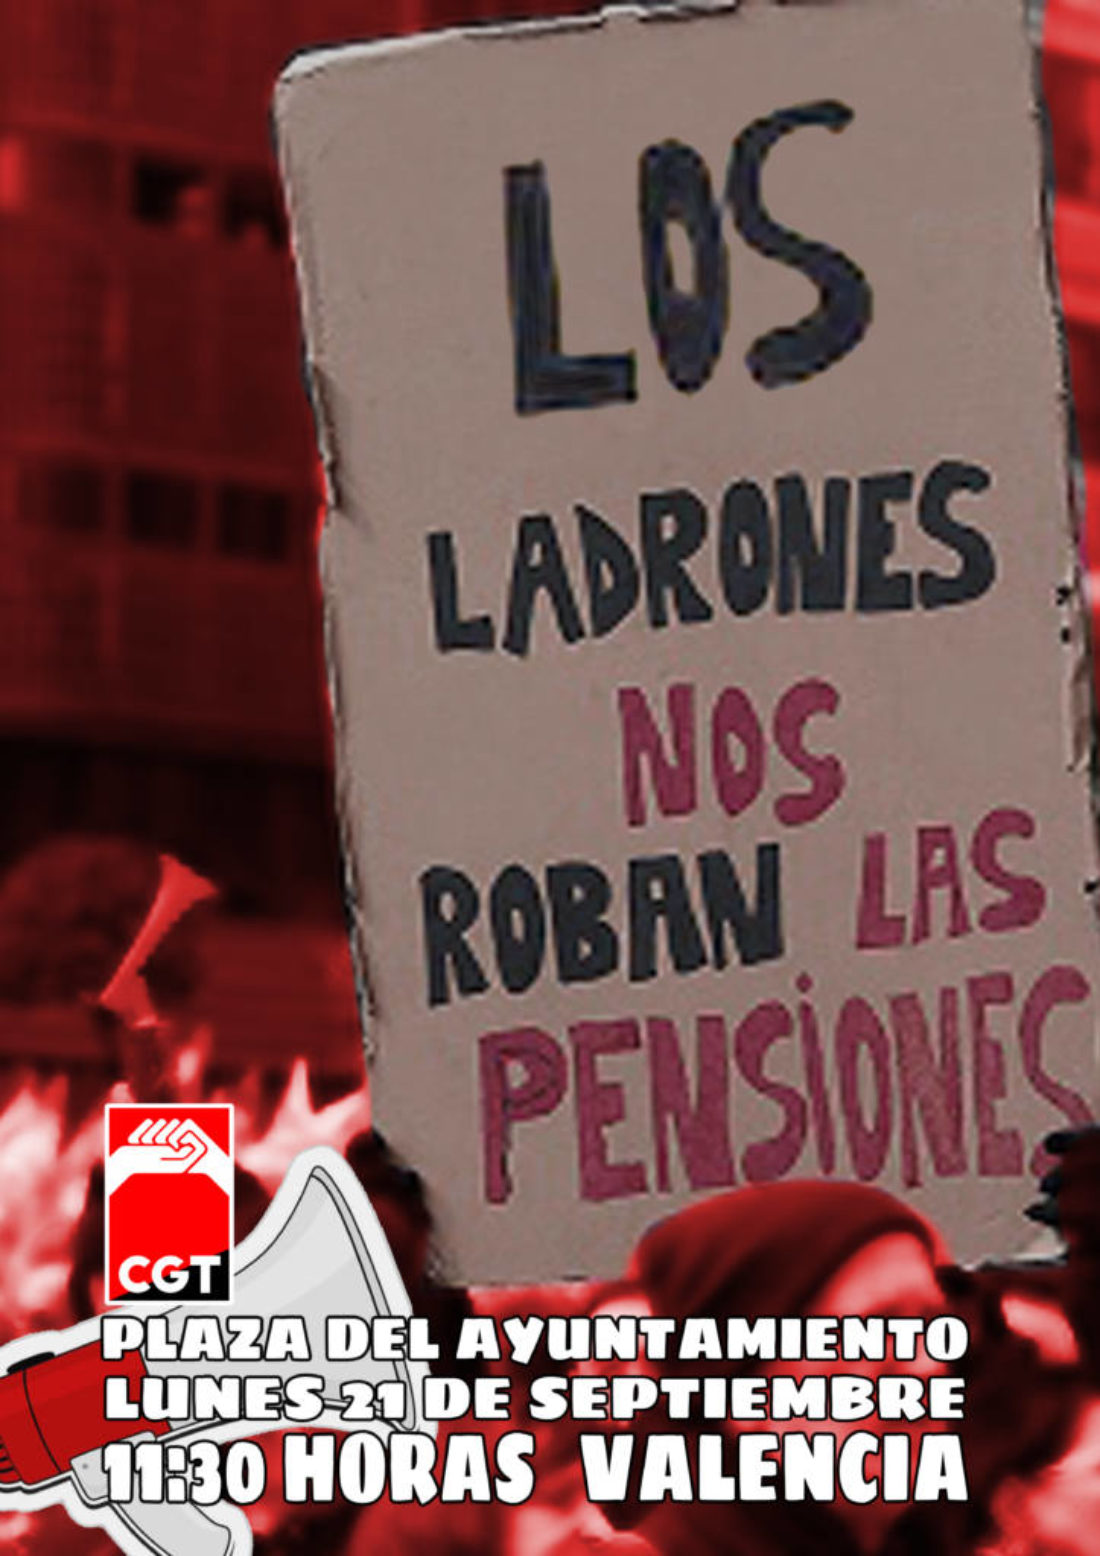 CGT acudirá a la concentración convocada por la Coordinadora valenciana en defensa del sistema público de pensiones